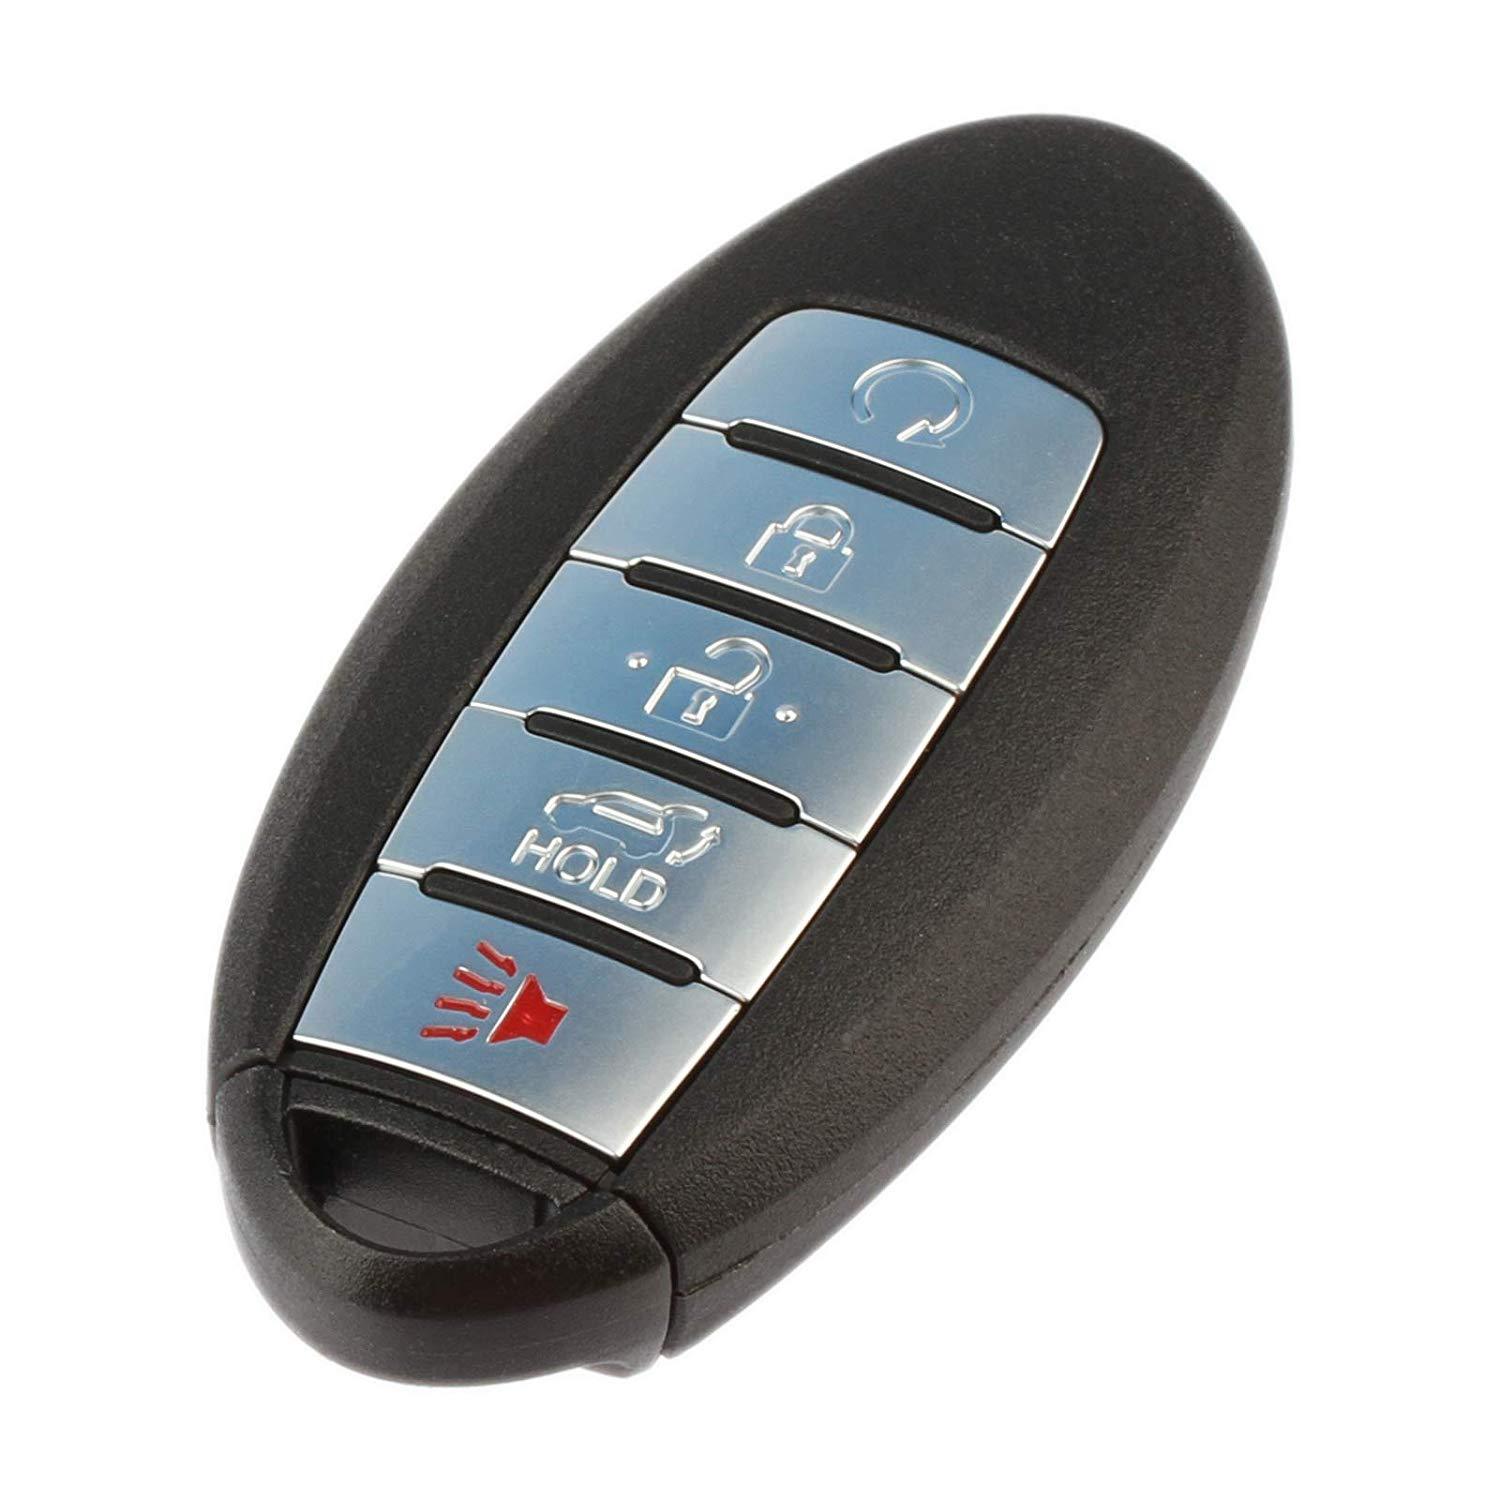 Car Remote Key for Nissan Patrol 5 Buttons 433.92MHz 10pcs/set